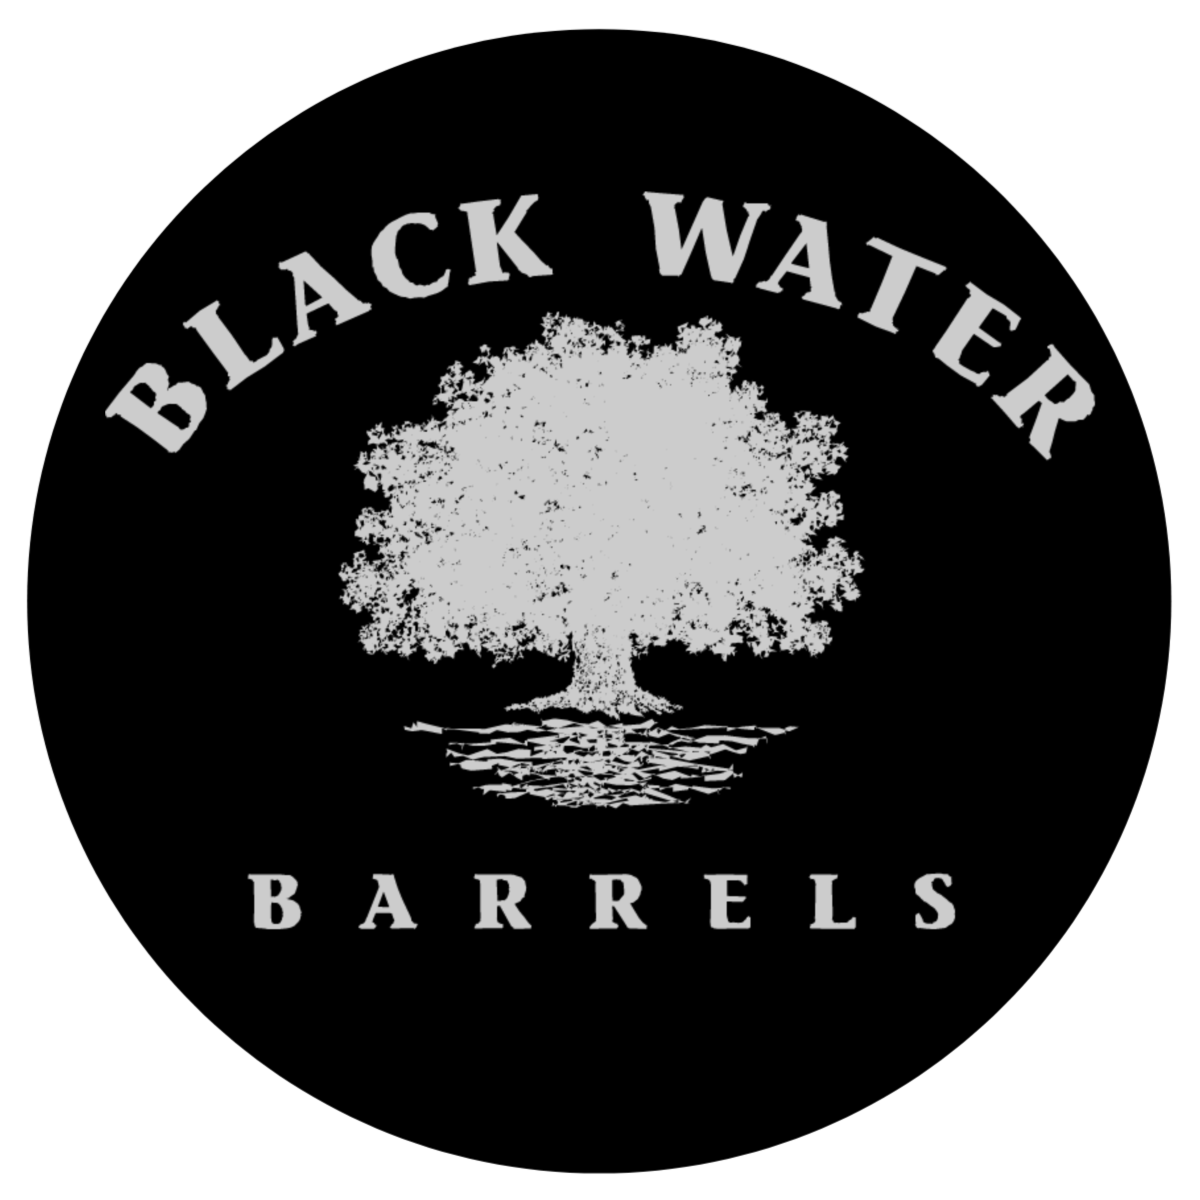 Black Water Barrels